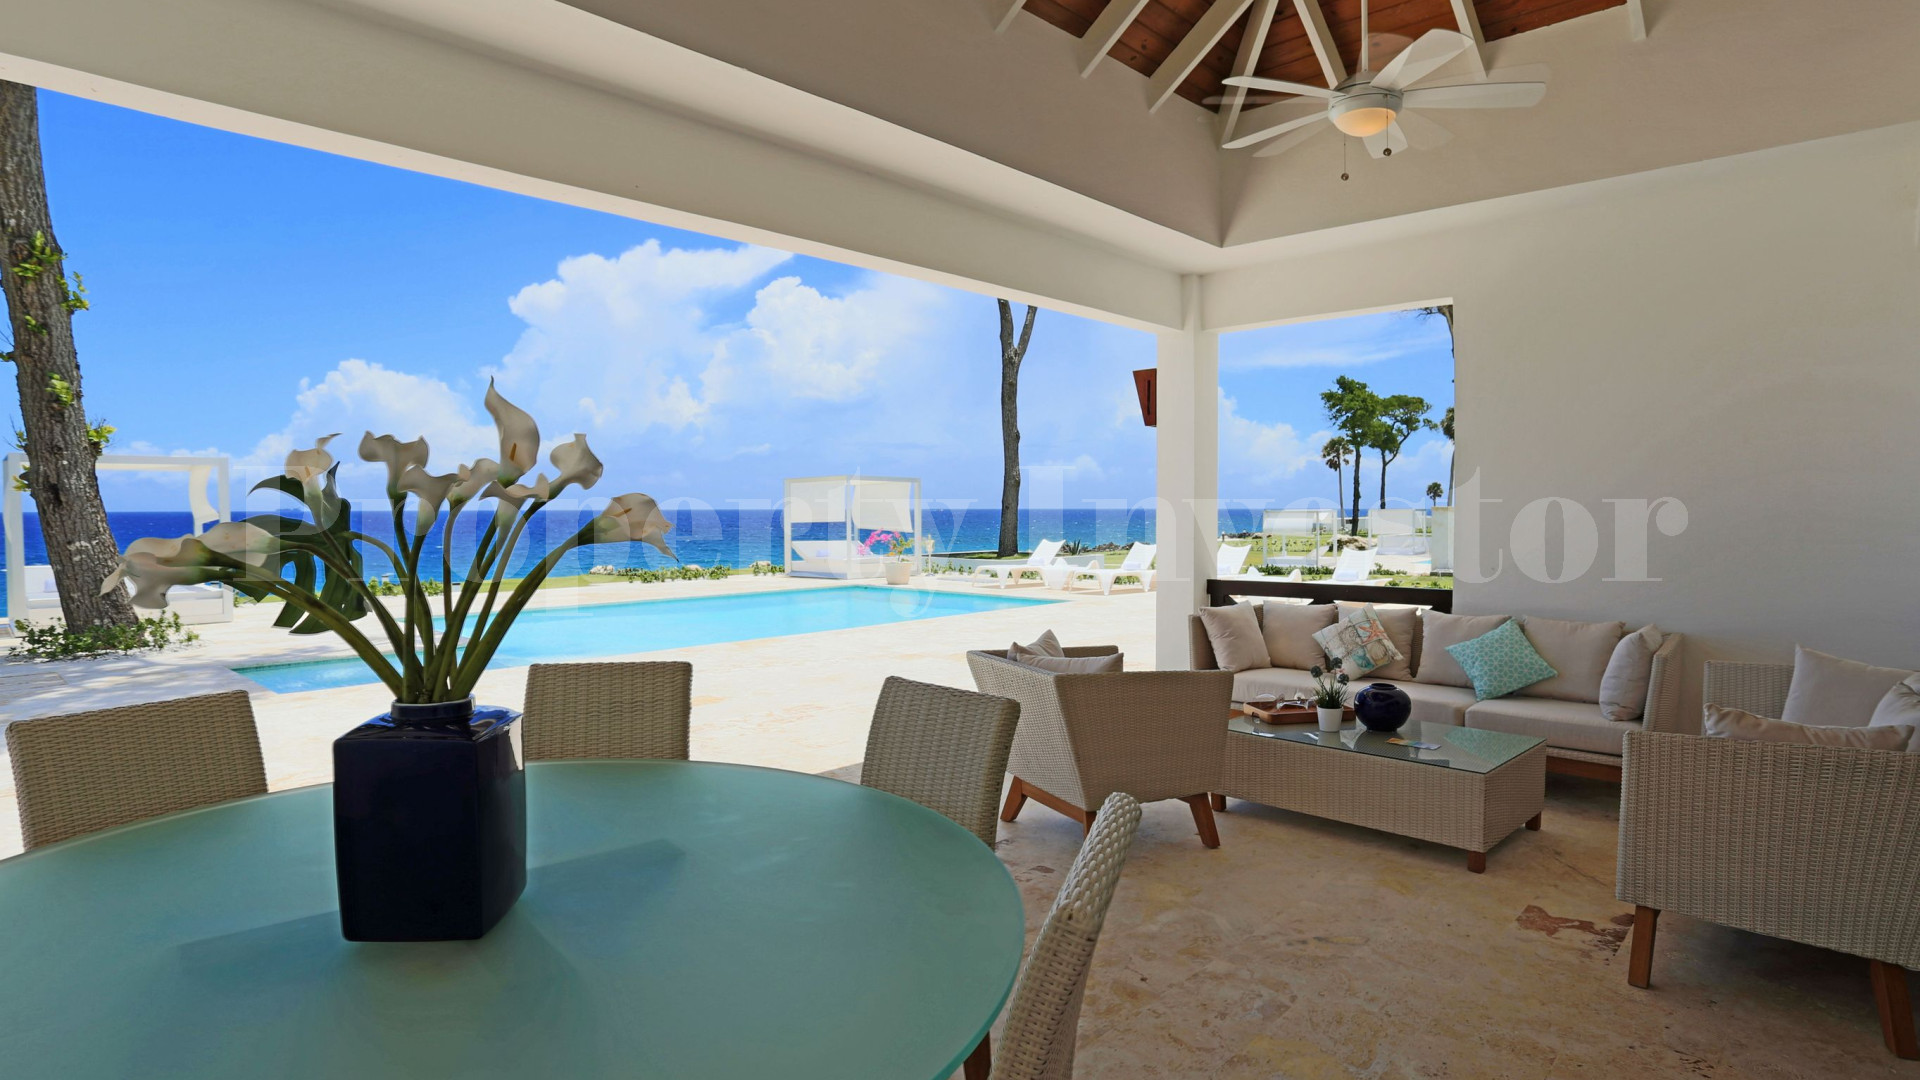 Вилла с 3 спальнями на берегу моря в Доминиканской Республике с финансированием на 30 лет (Вилла 1)